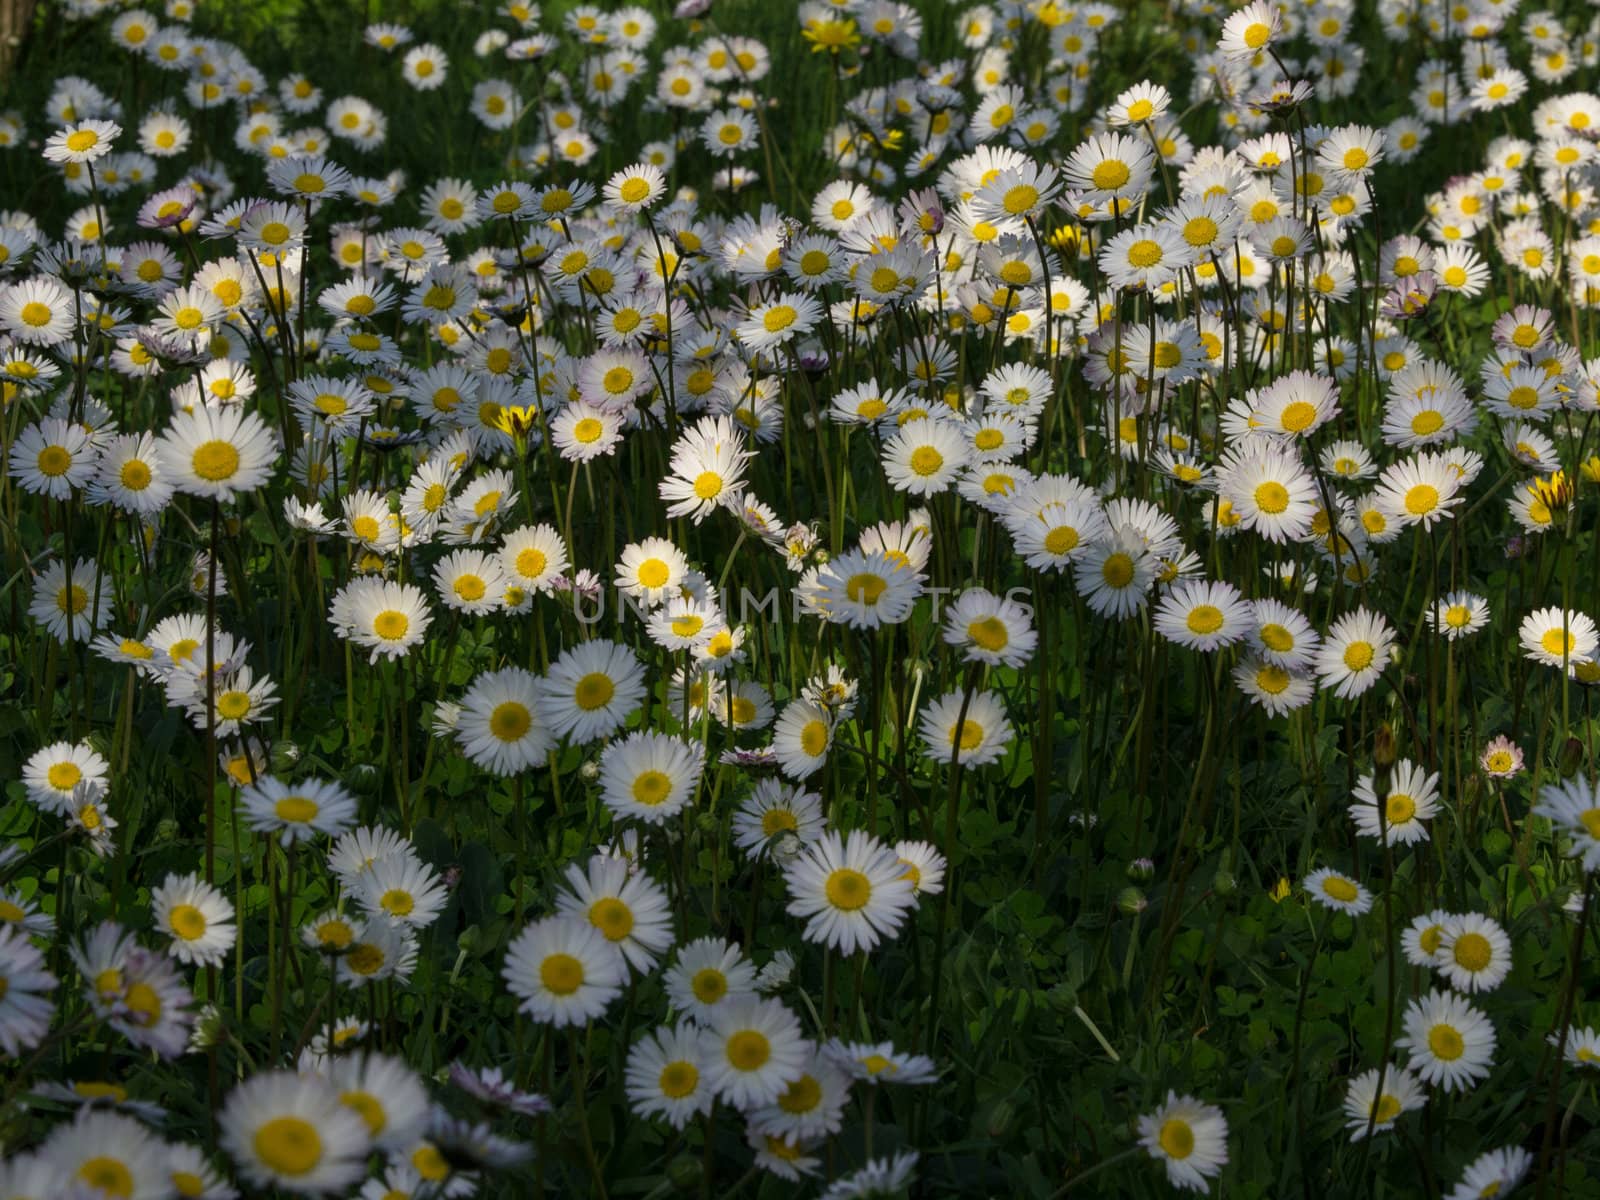 daisy field by nevenm